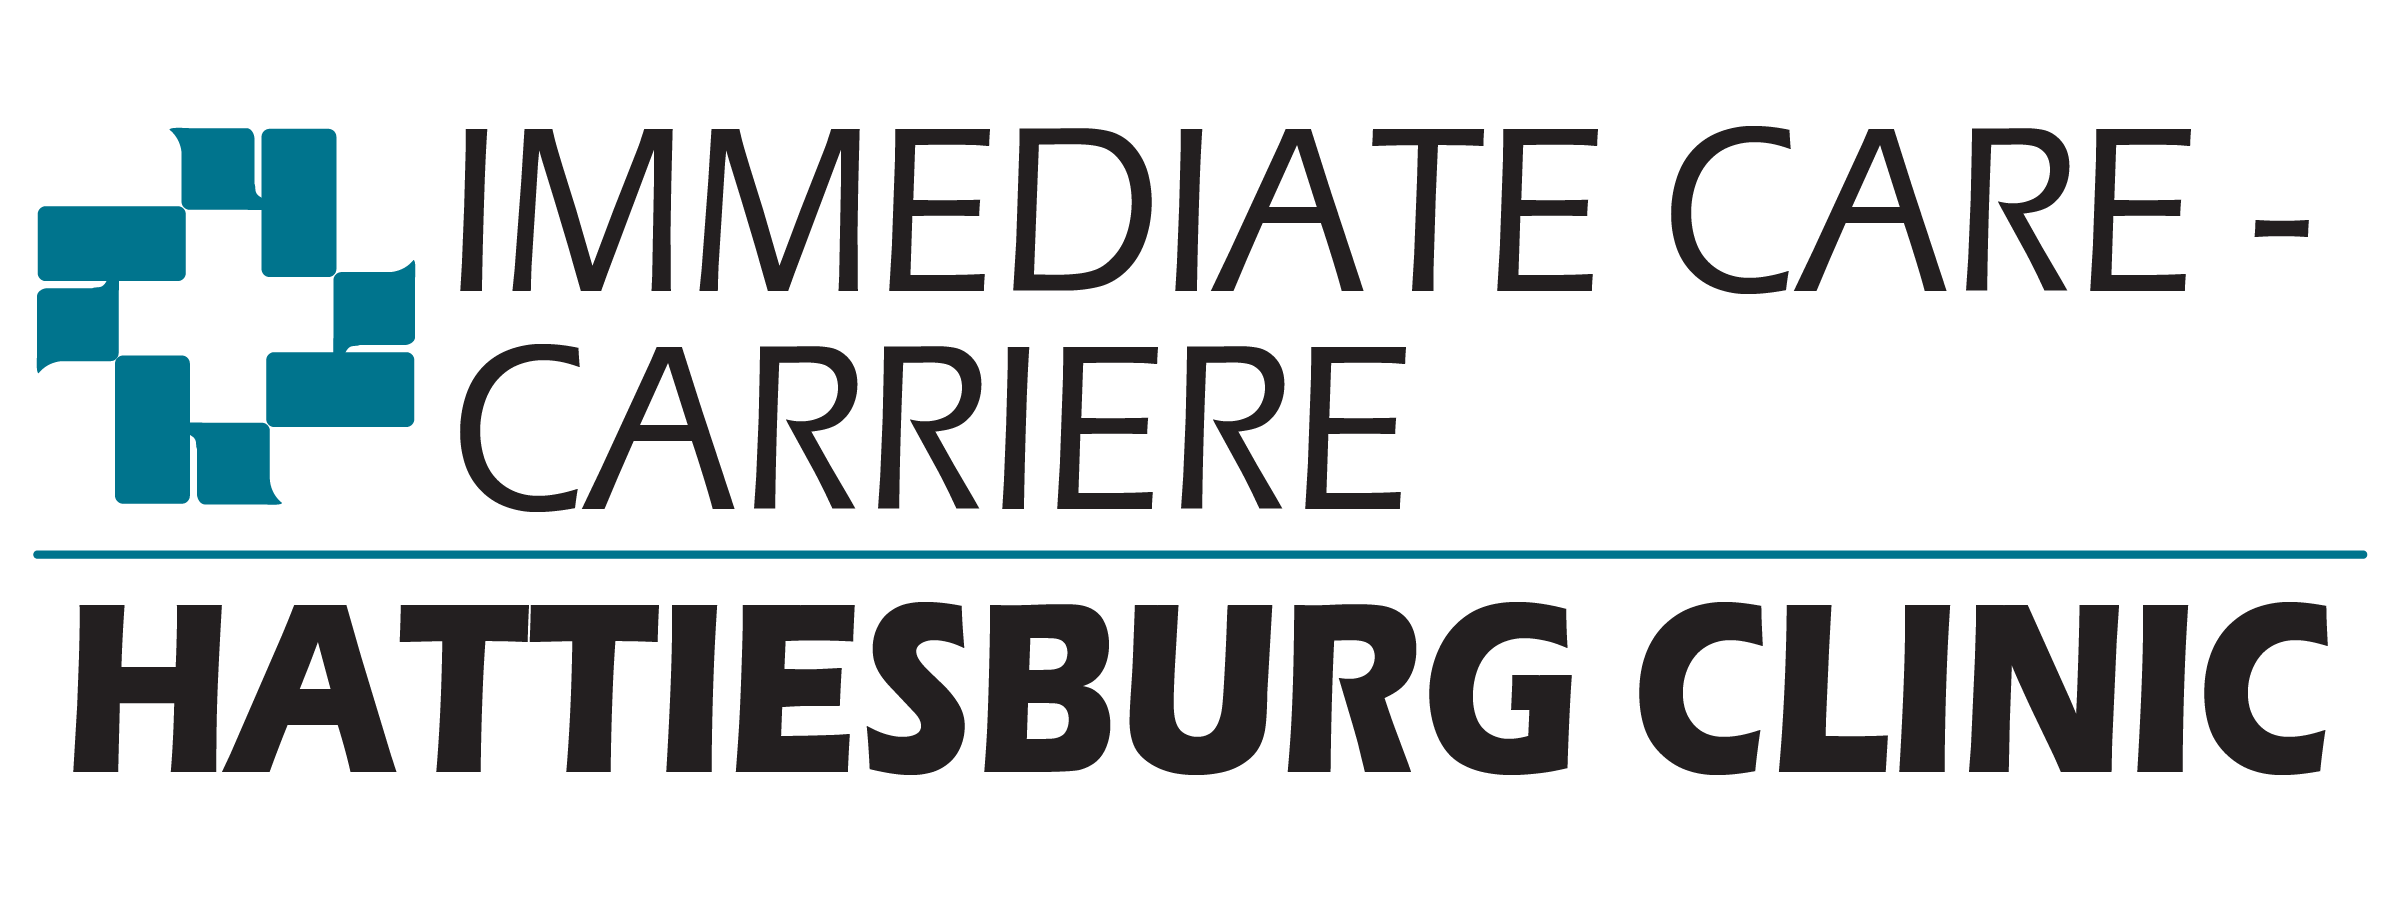 Immediate Care - Carriere logo